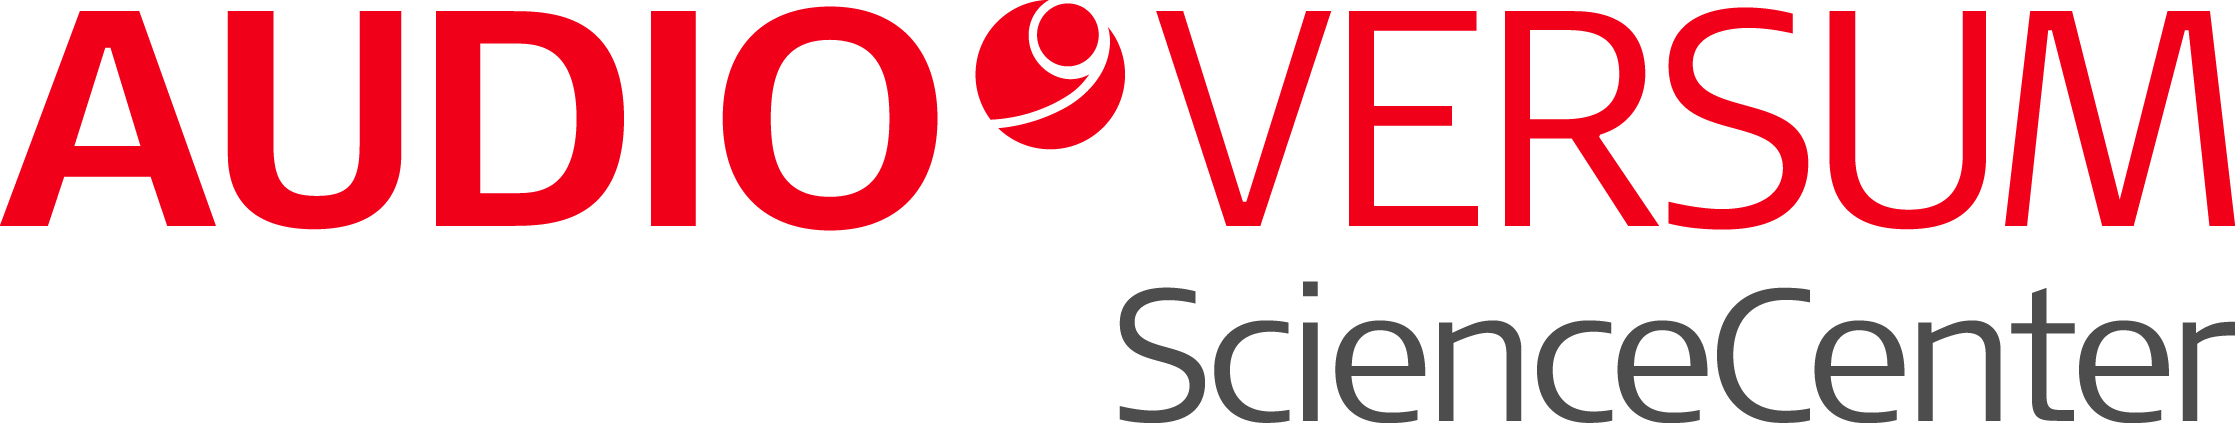 Logo AUDIOVERSUM ScienceCenter